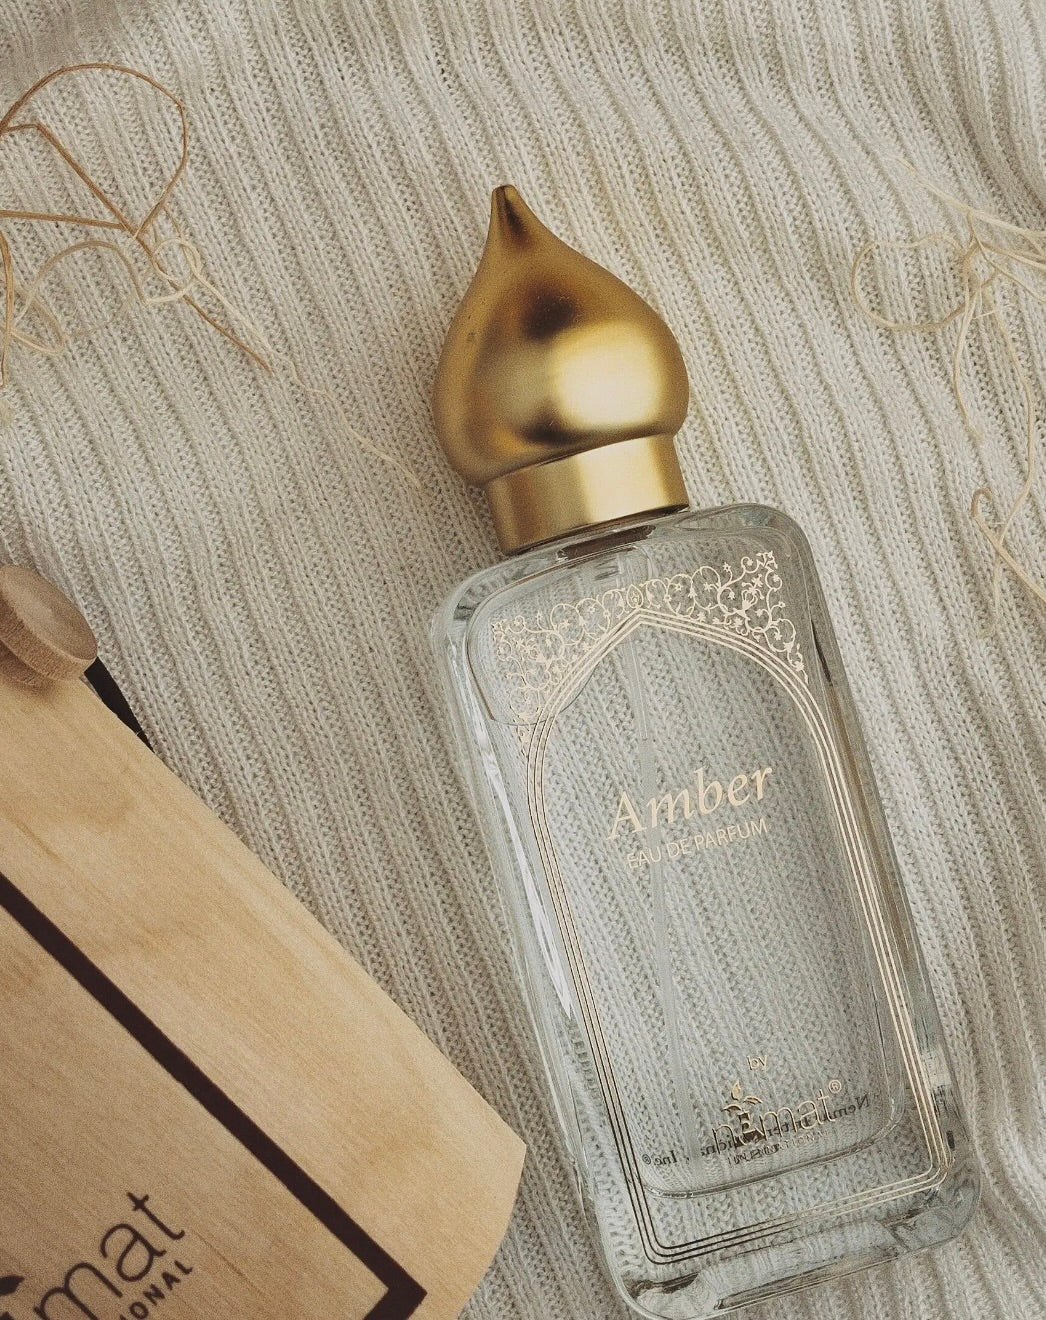 Nemat Amber Eau De Parfum 50ml